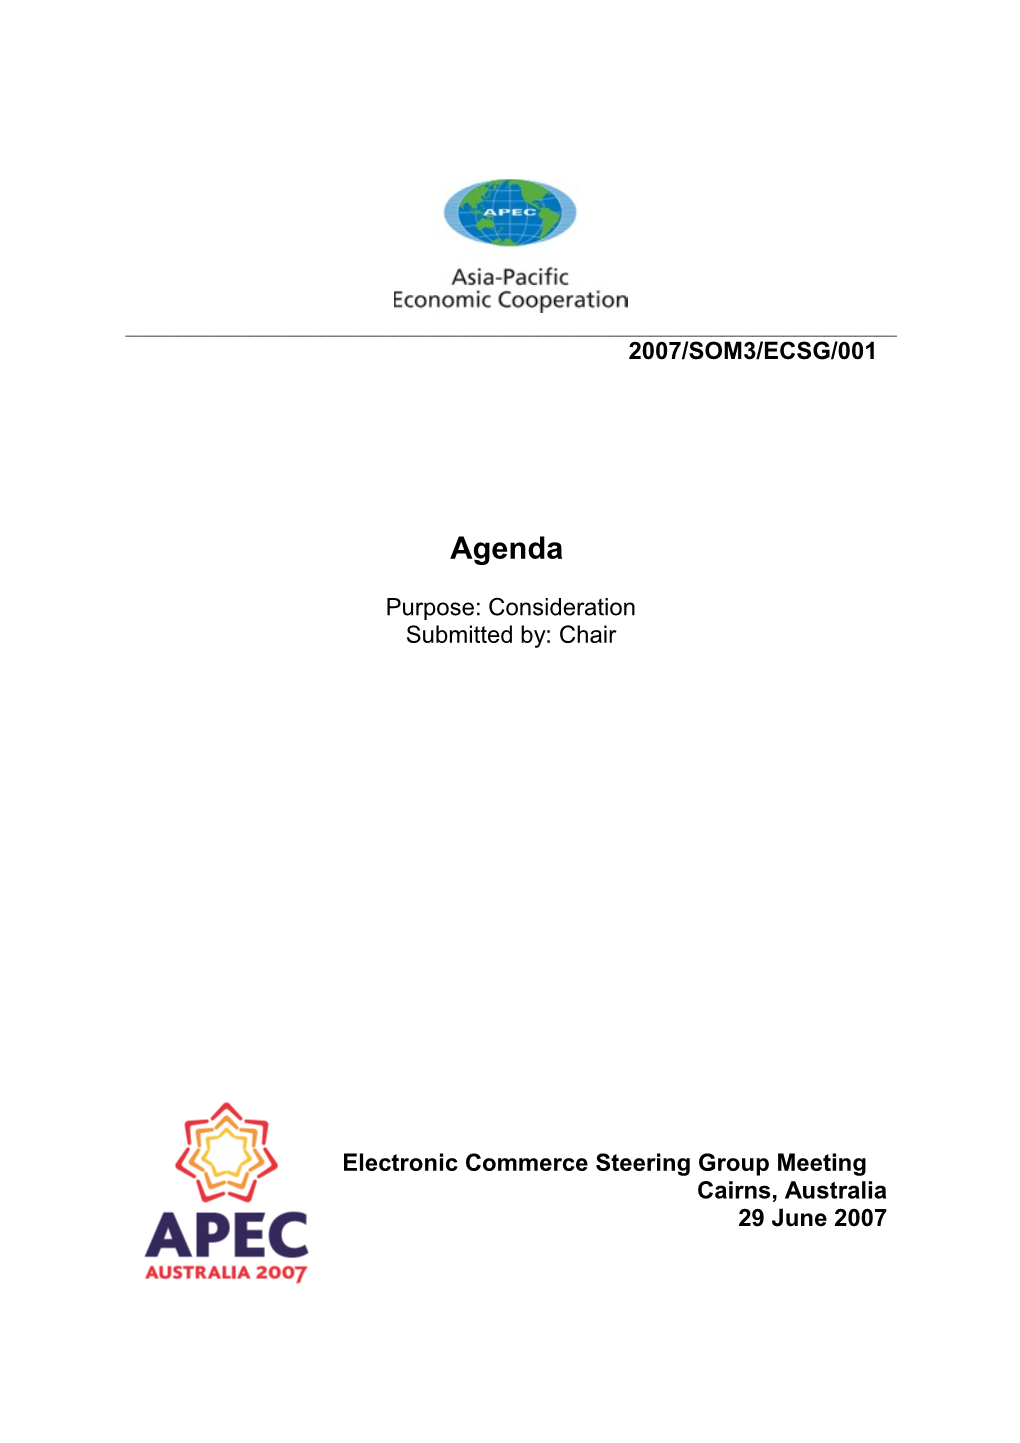 APEC Meeting Documents s5